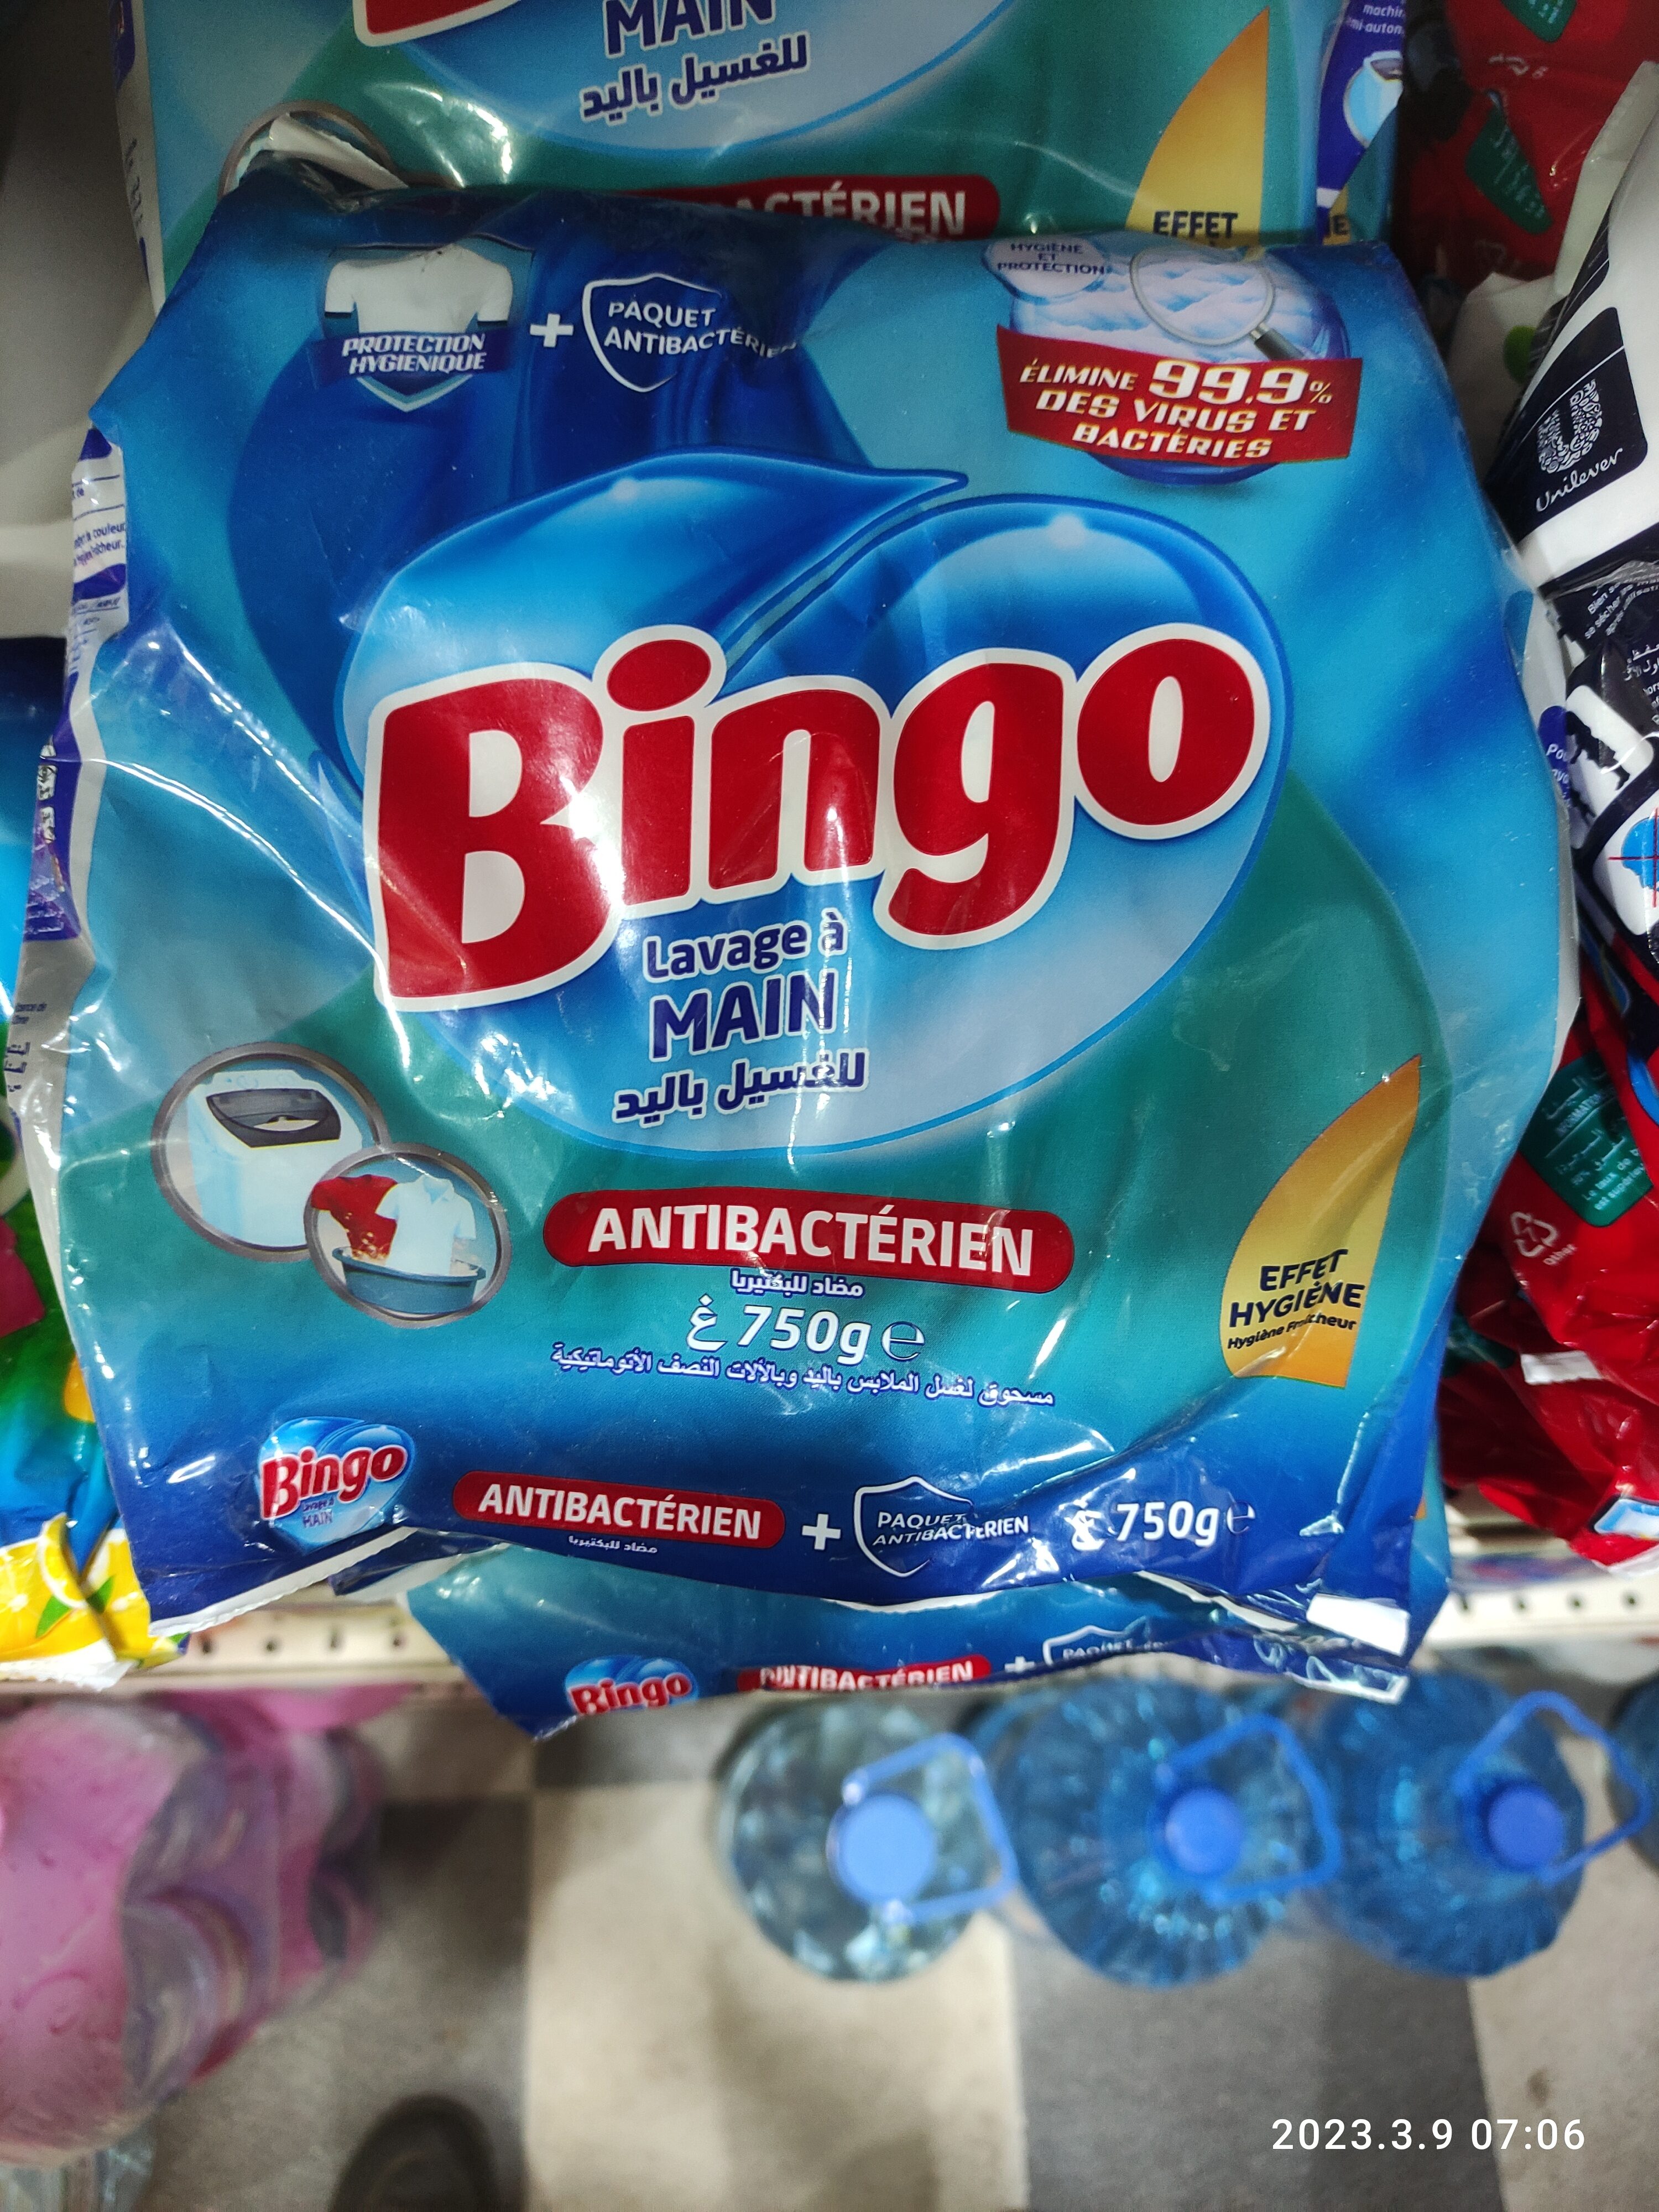 bingo - Product - en